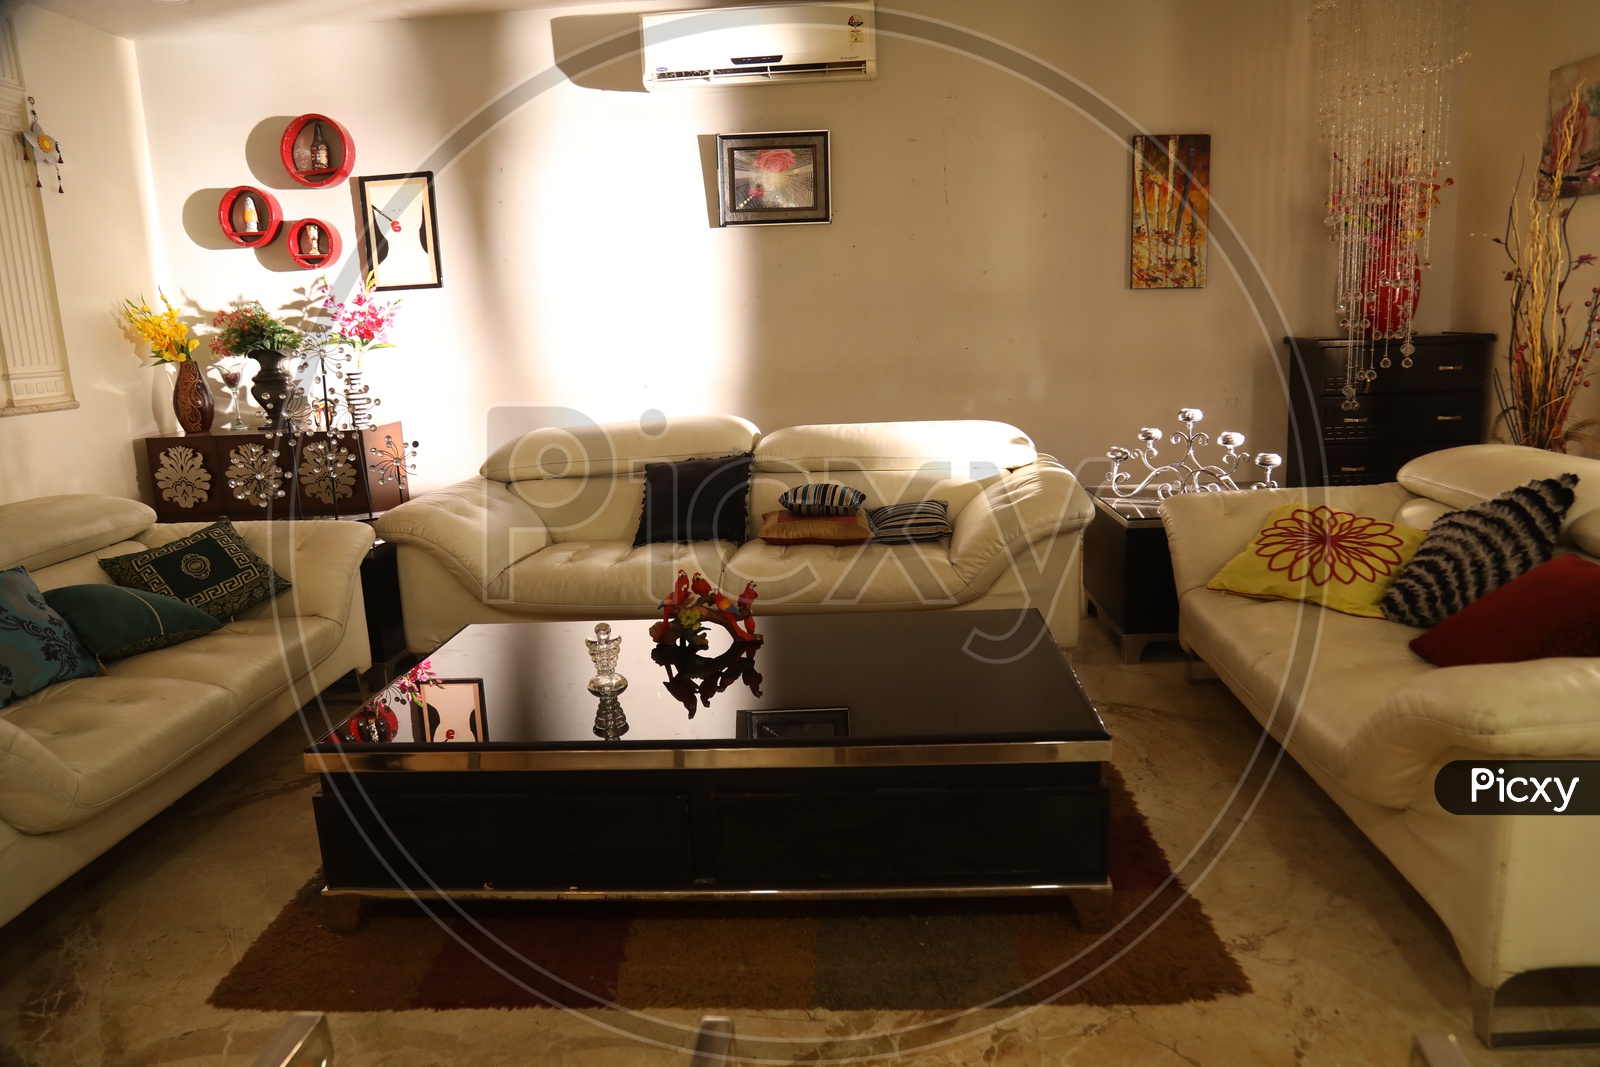 Interior design of a living room